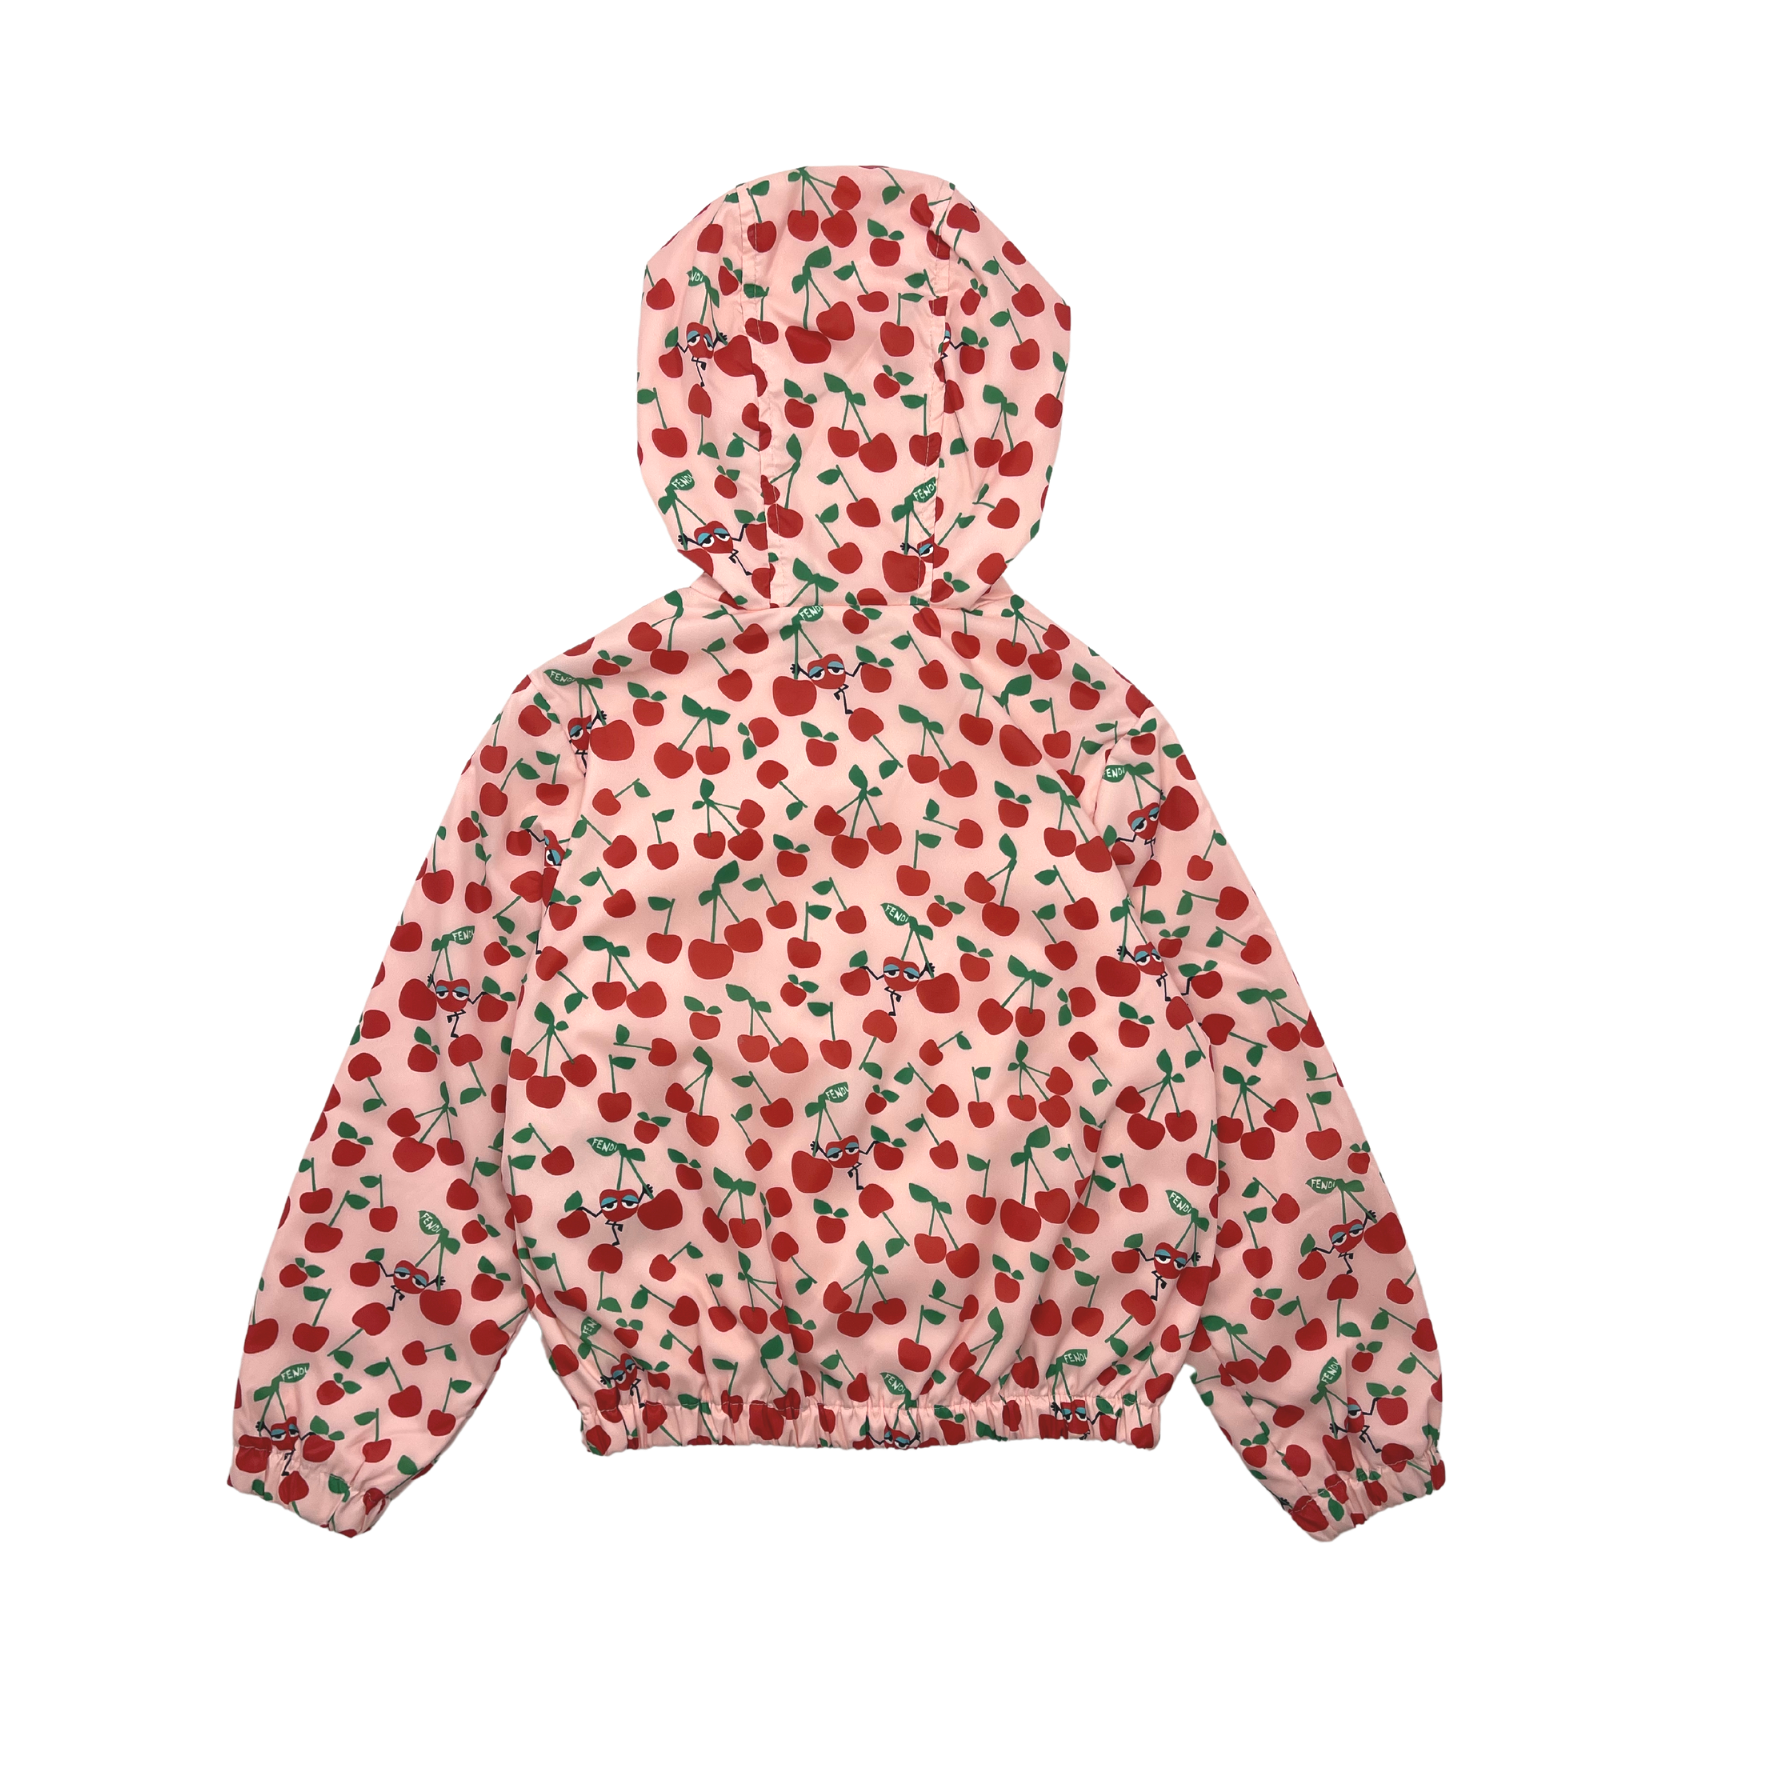 FENDI - Veste à capuche cerises rose & rouge - 7 ans